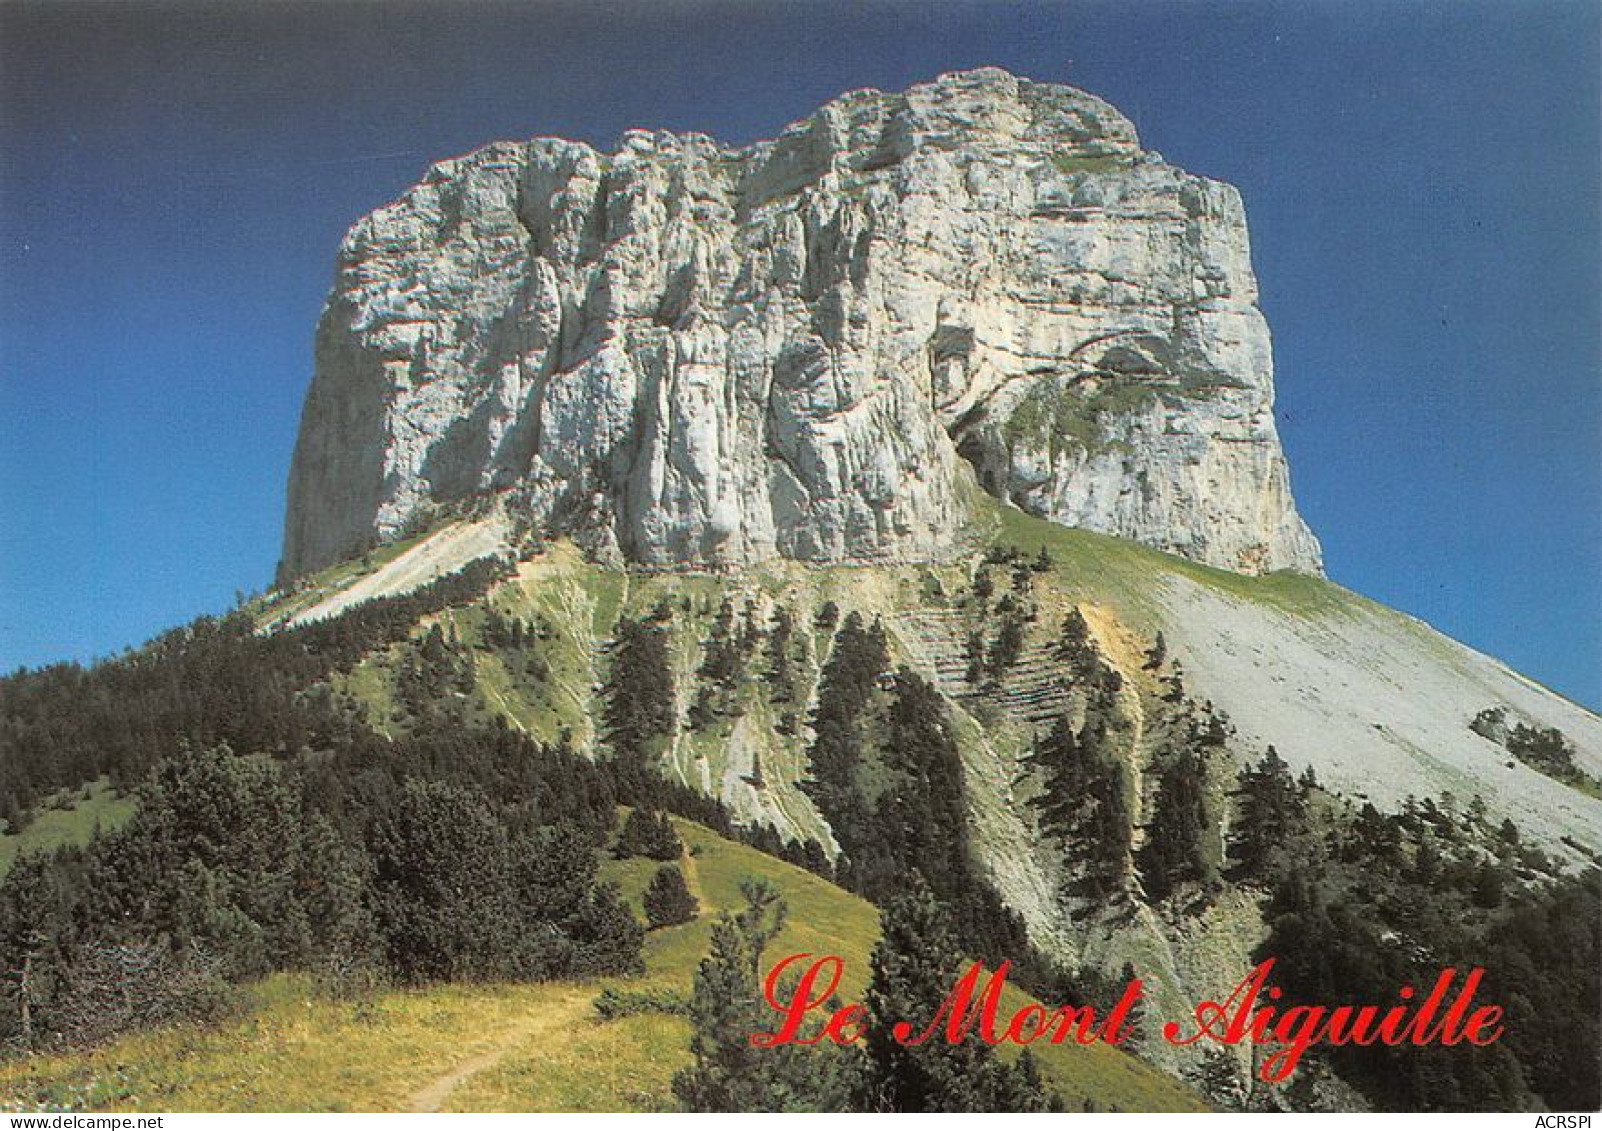 lot de 28 cartes de la Chartreuse en Isère cartes vierges non circulée               (Scan R/V) N°   1   \MT9149